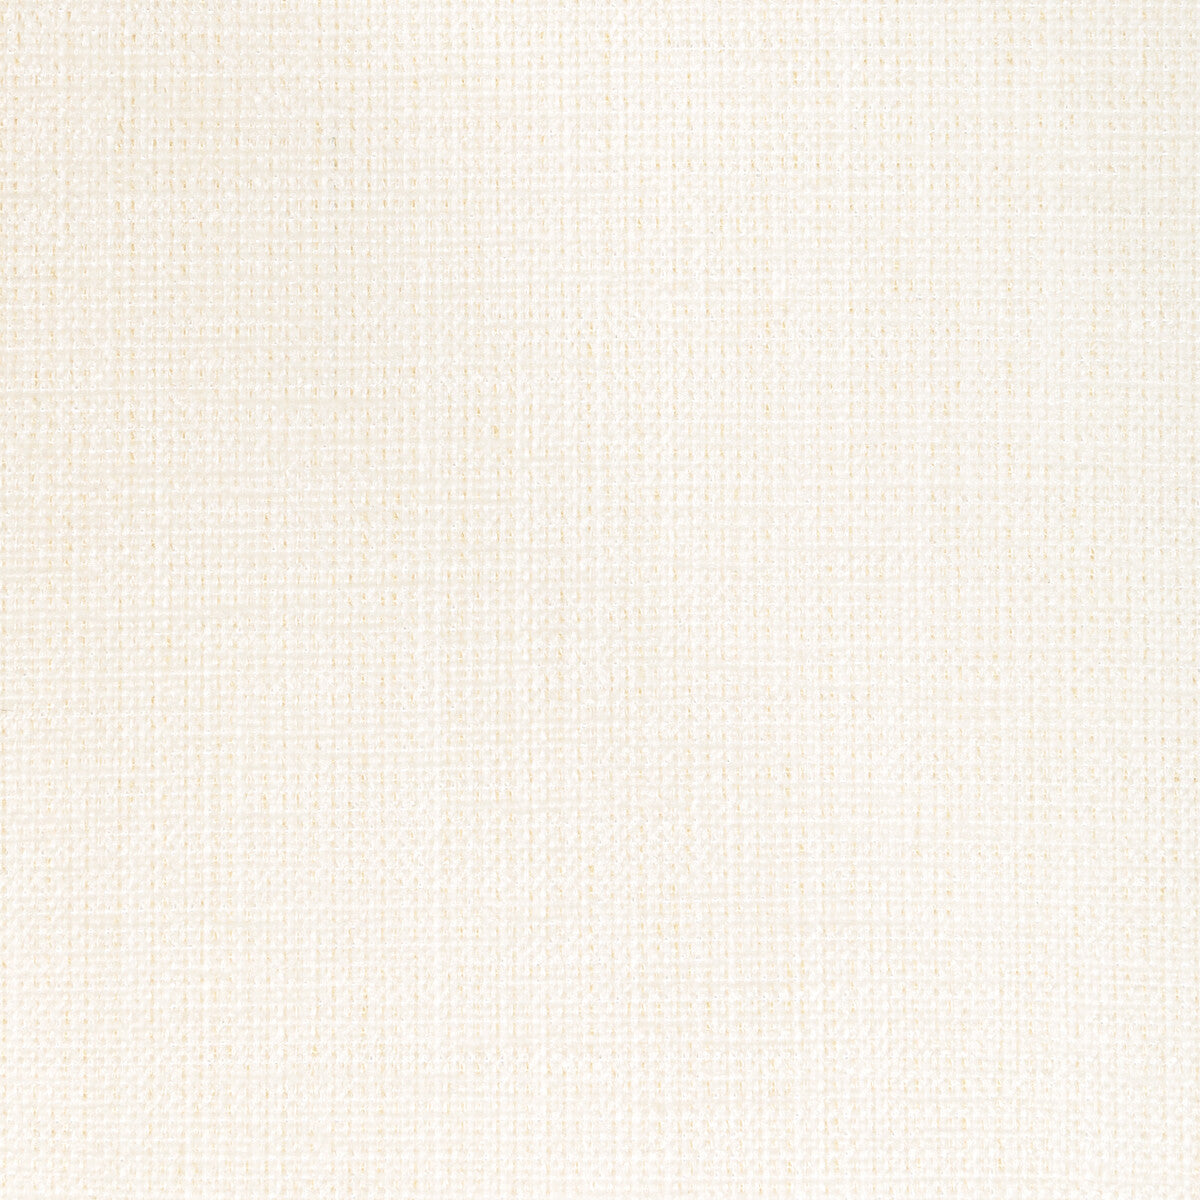 Poet Plain fabric in ivory color - pattern 36649.1.0 - by Kravet Basics